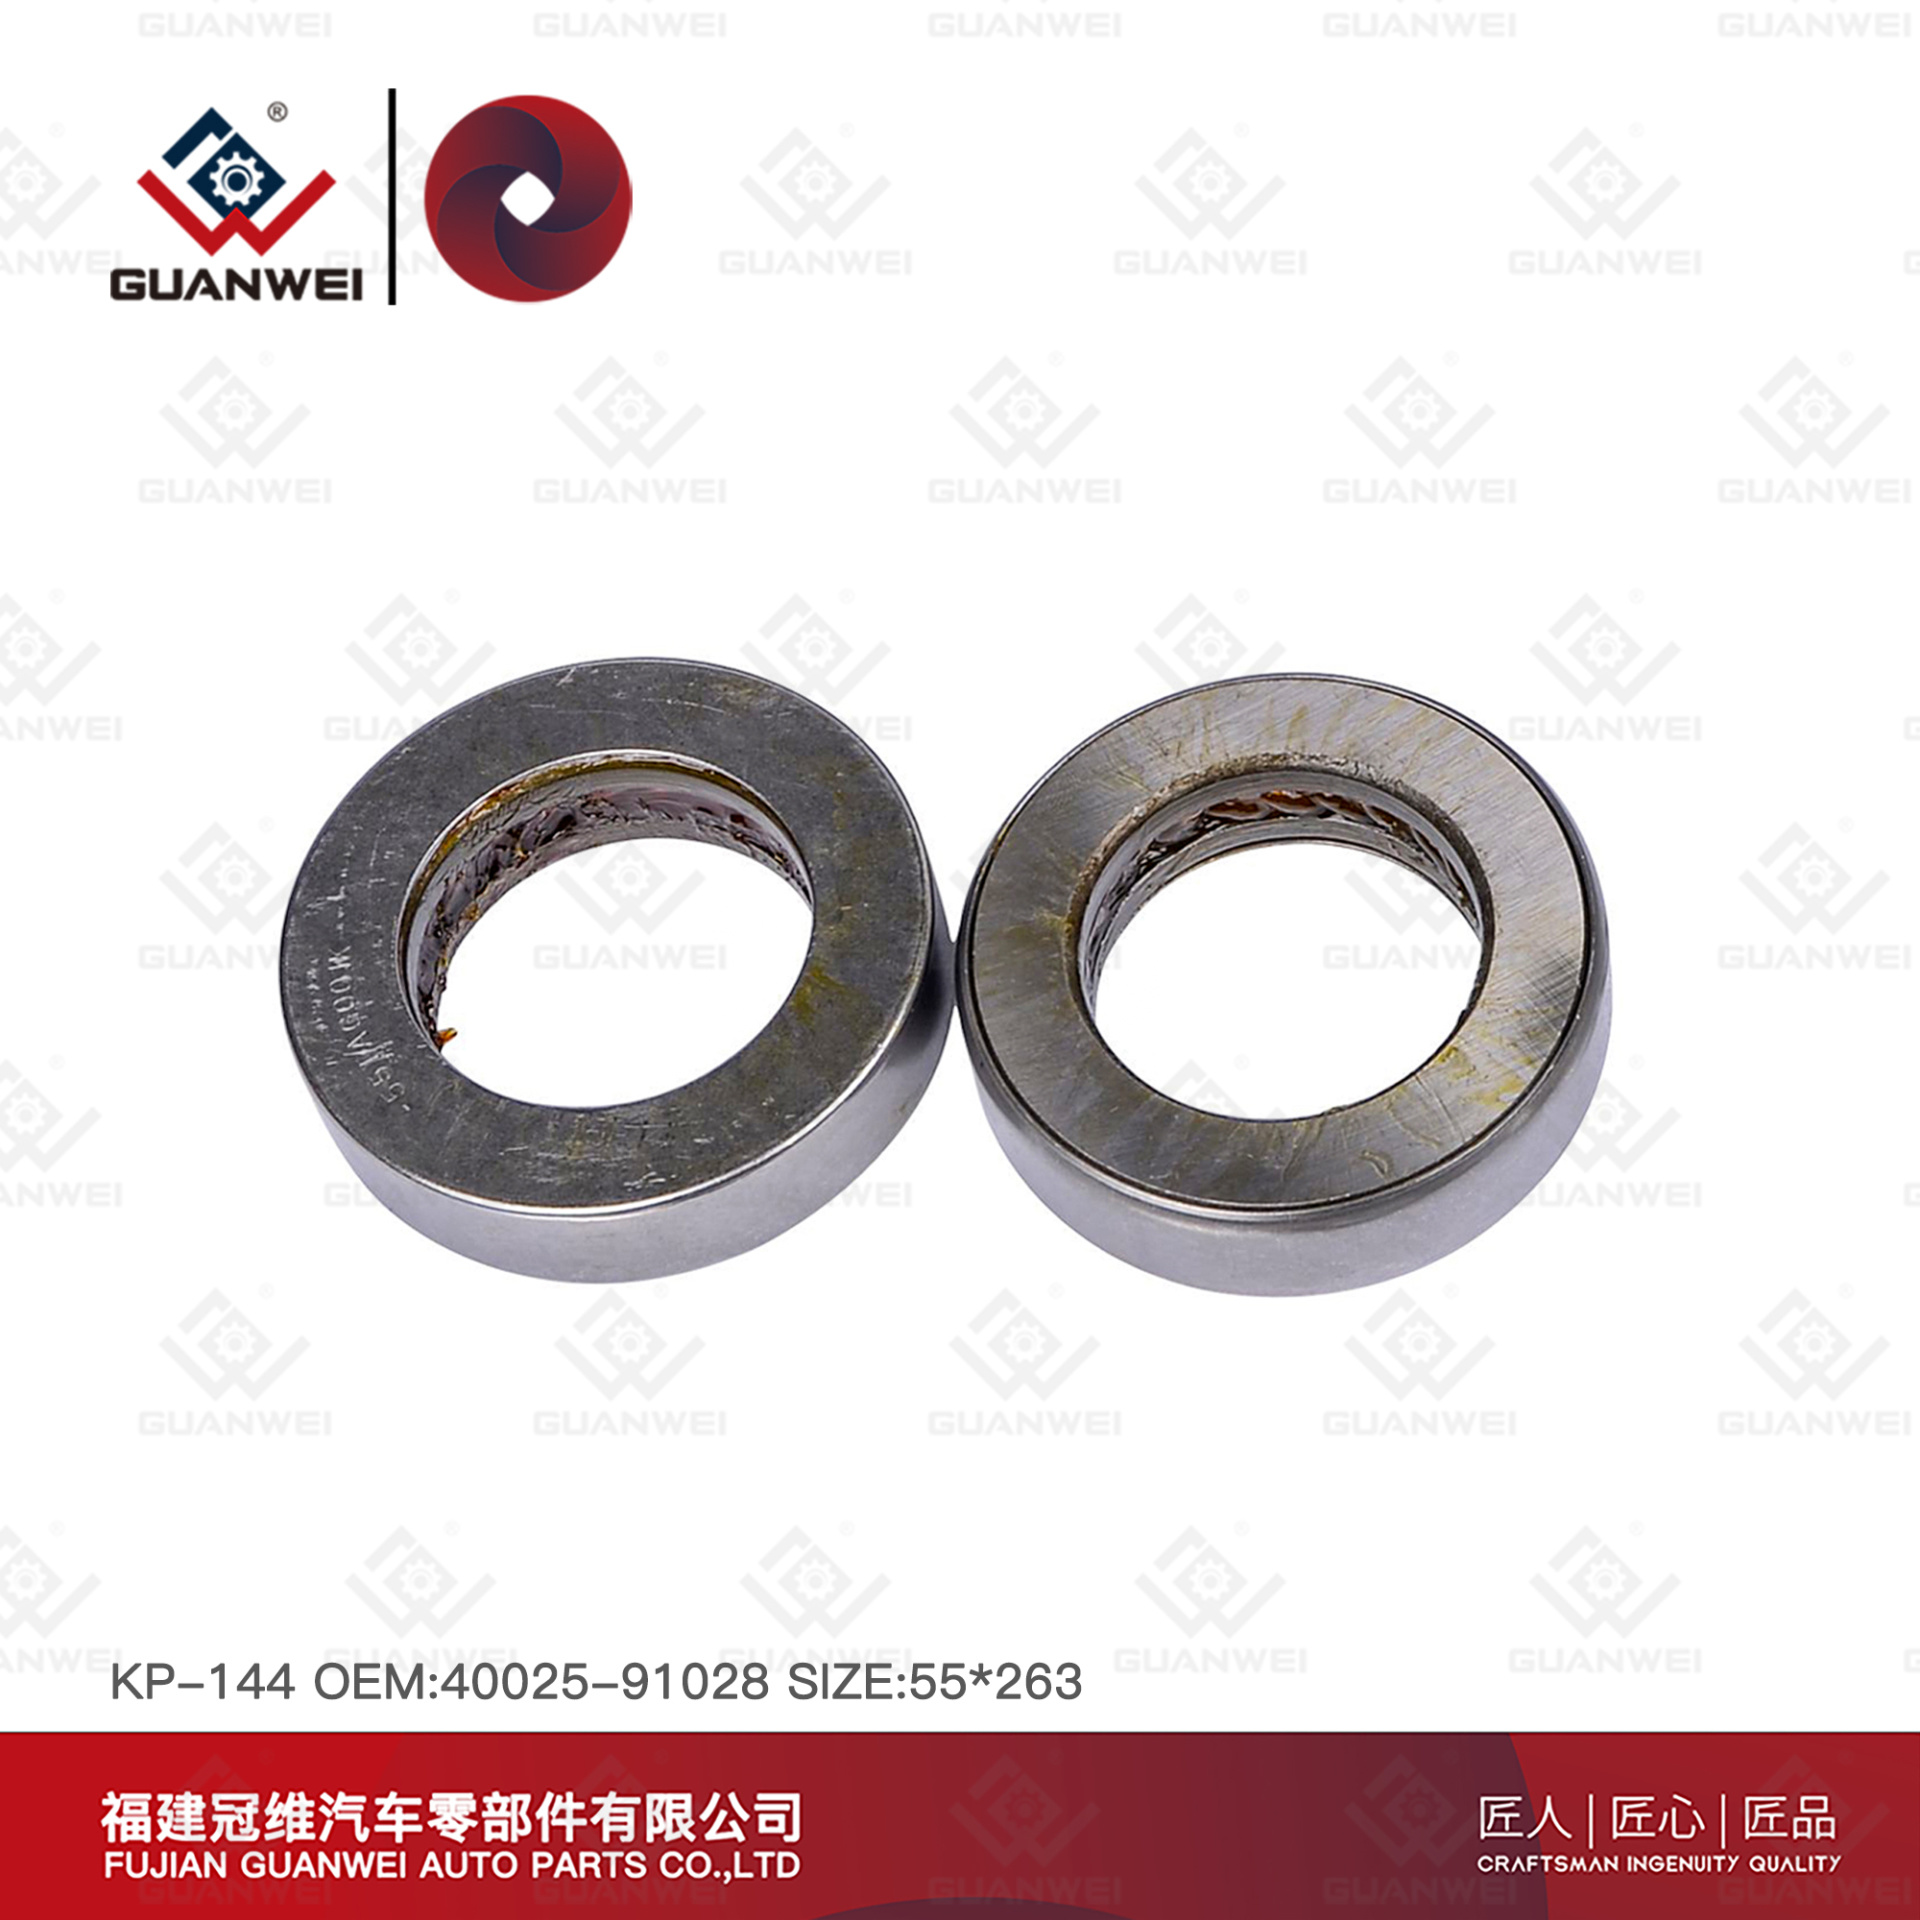 king pin kit KP-144  OEM:40025-91028 Material:45# steel